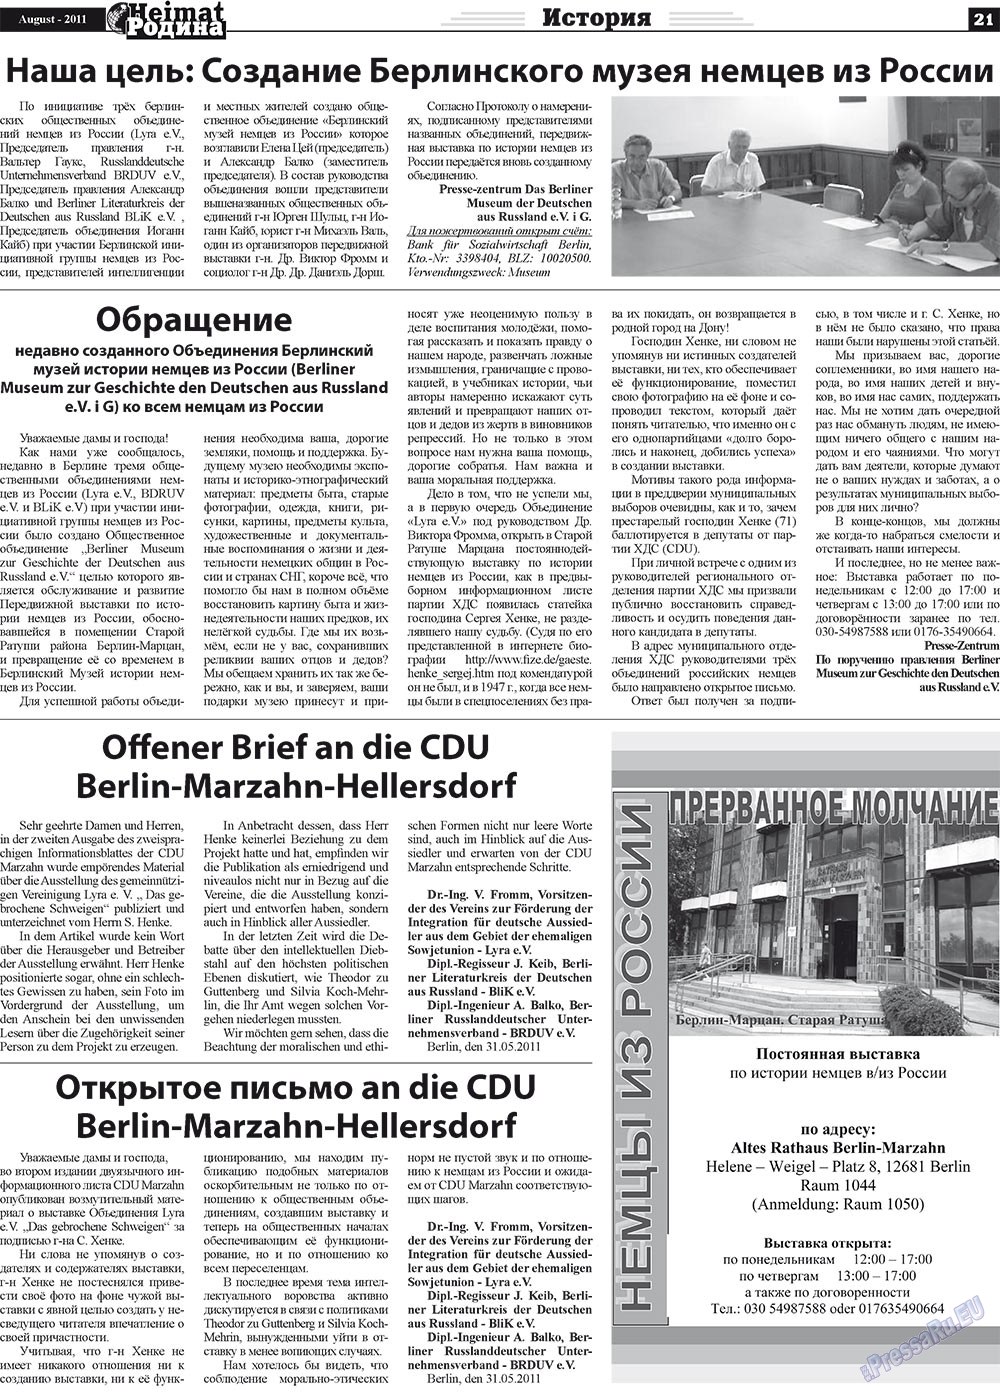 Heimat-Родина (газета). 2011 год, номер 8, стр. 21